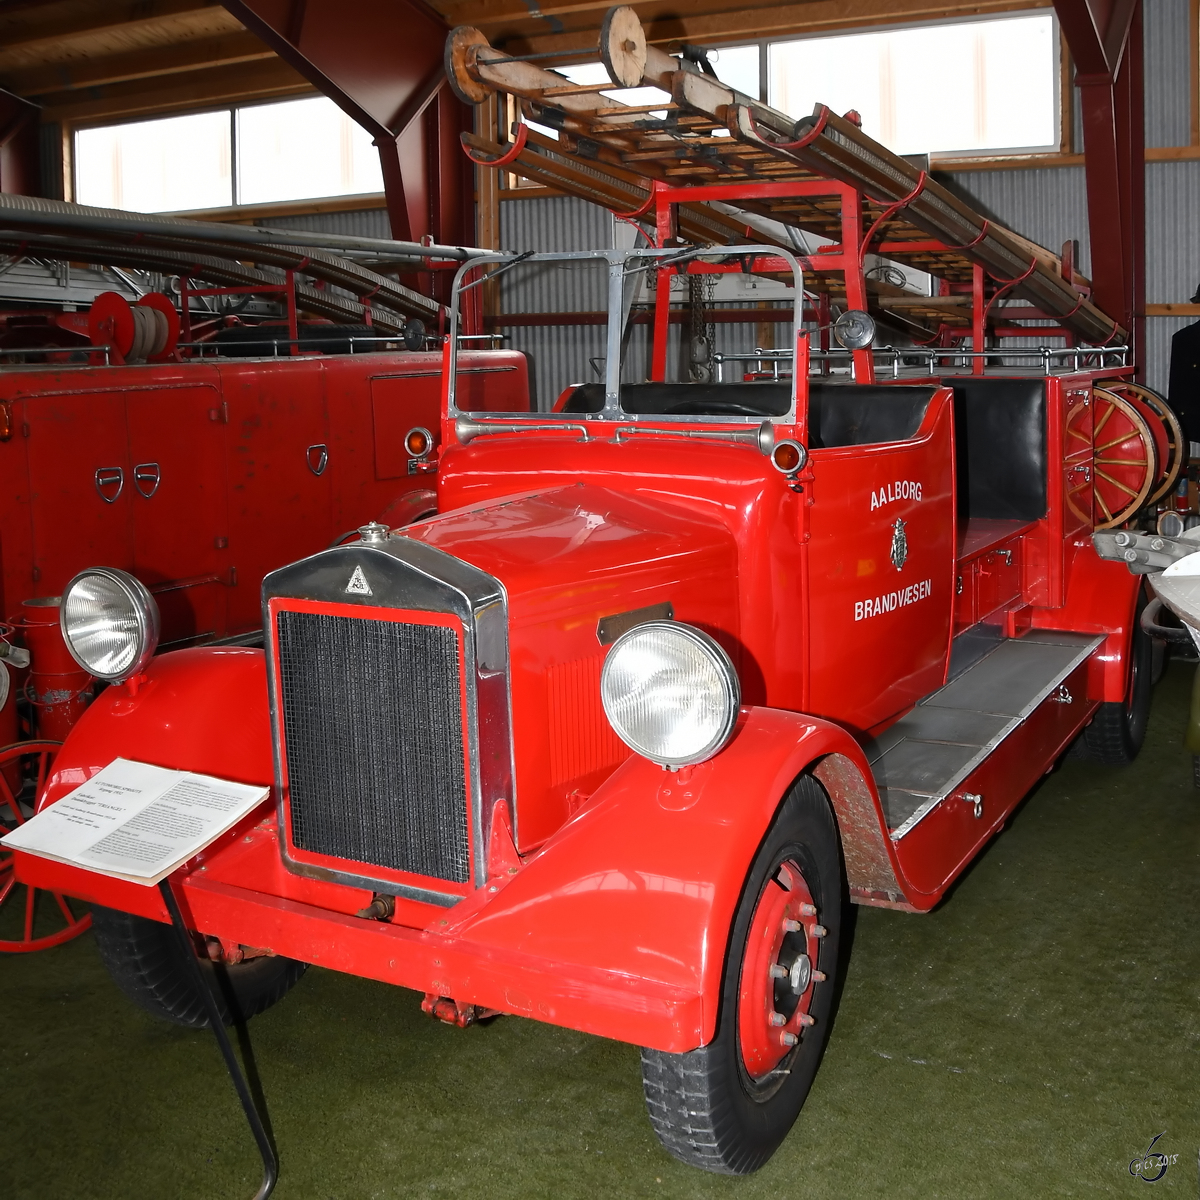 Ein Feuerwehrfahrzeug des Herstellers Triangel aus dem Jahre 1932. (Verteidigungs- und Garnisonsmuseum Aalborg, Juni 2018)